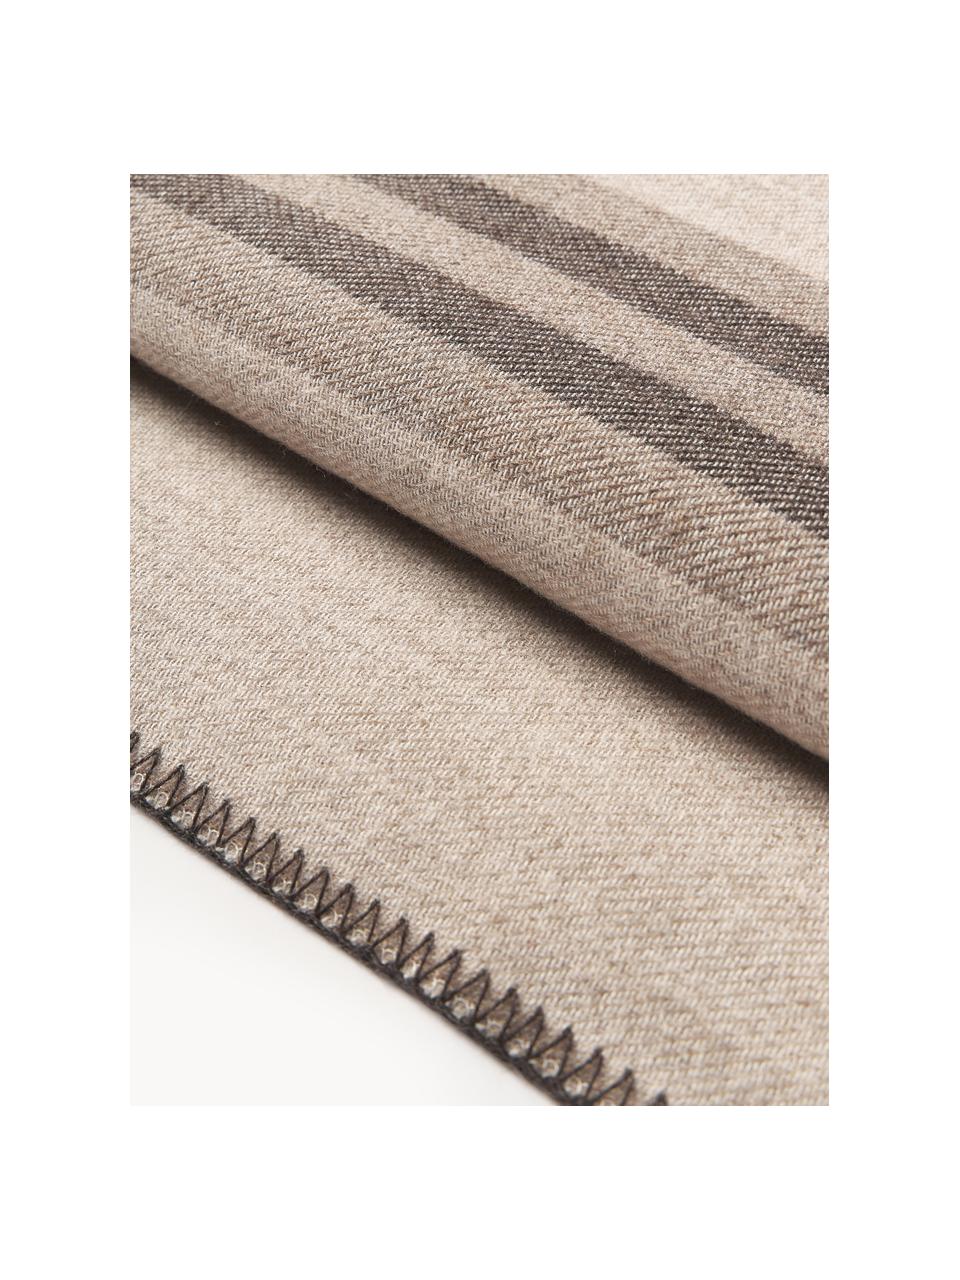 Copriletto in lana a righe Avorio, Tonalità beige, Larg. 230 x Lung. 250 (per letti fino a 180 x 200 cm)